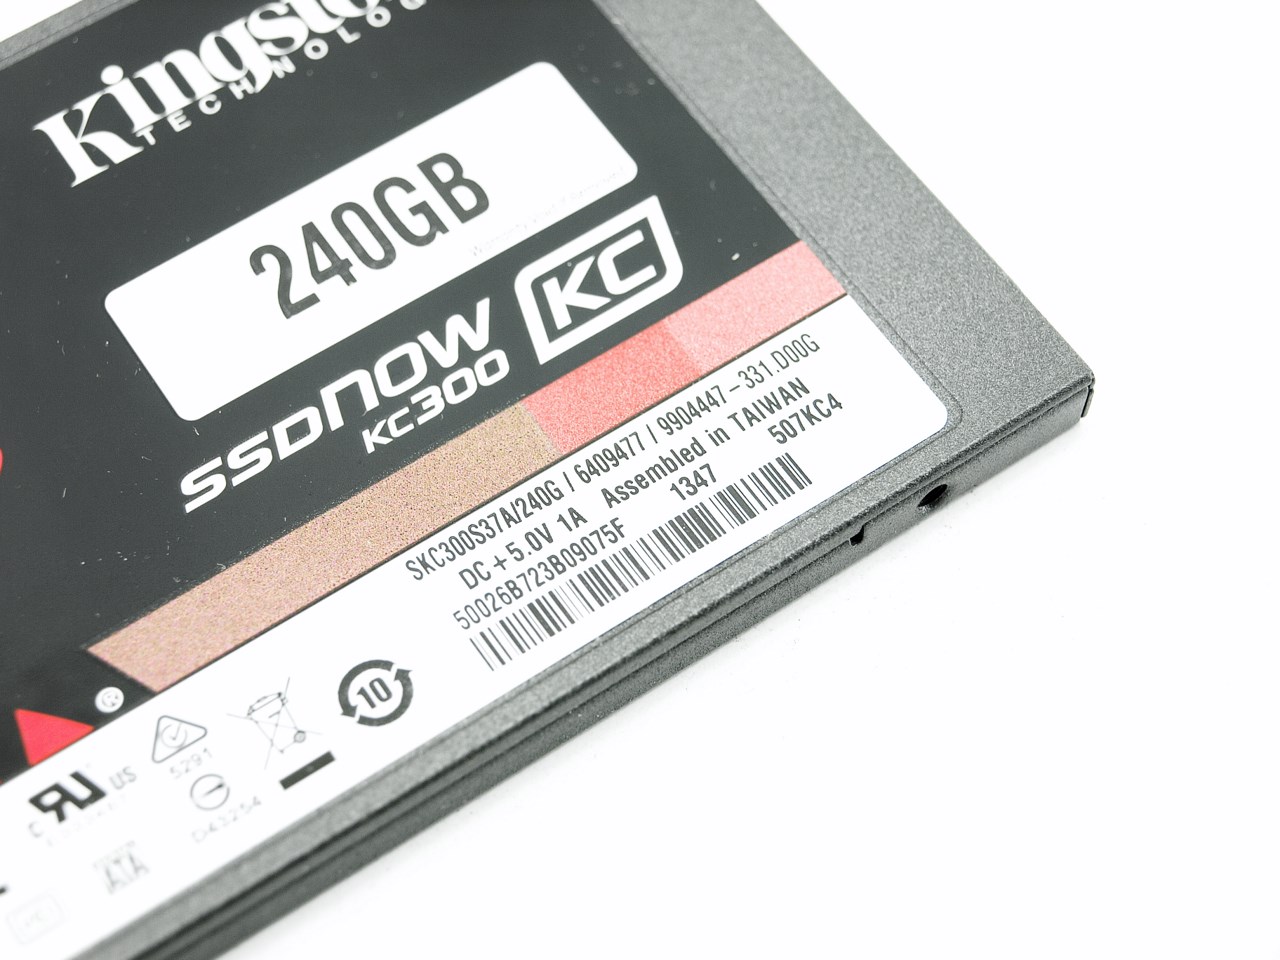 det er nytteløst Decode diskret Kingston SSDNow KC300 240GB SSD Upgrade Kit Review